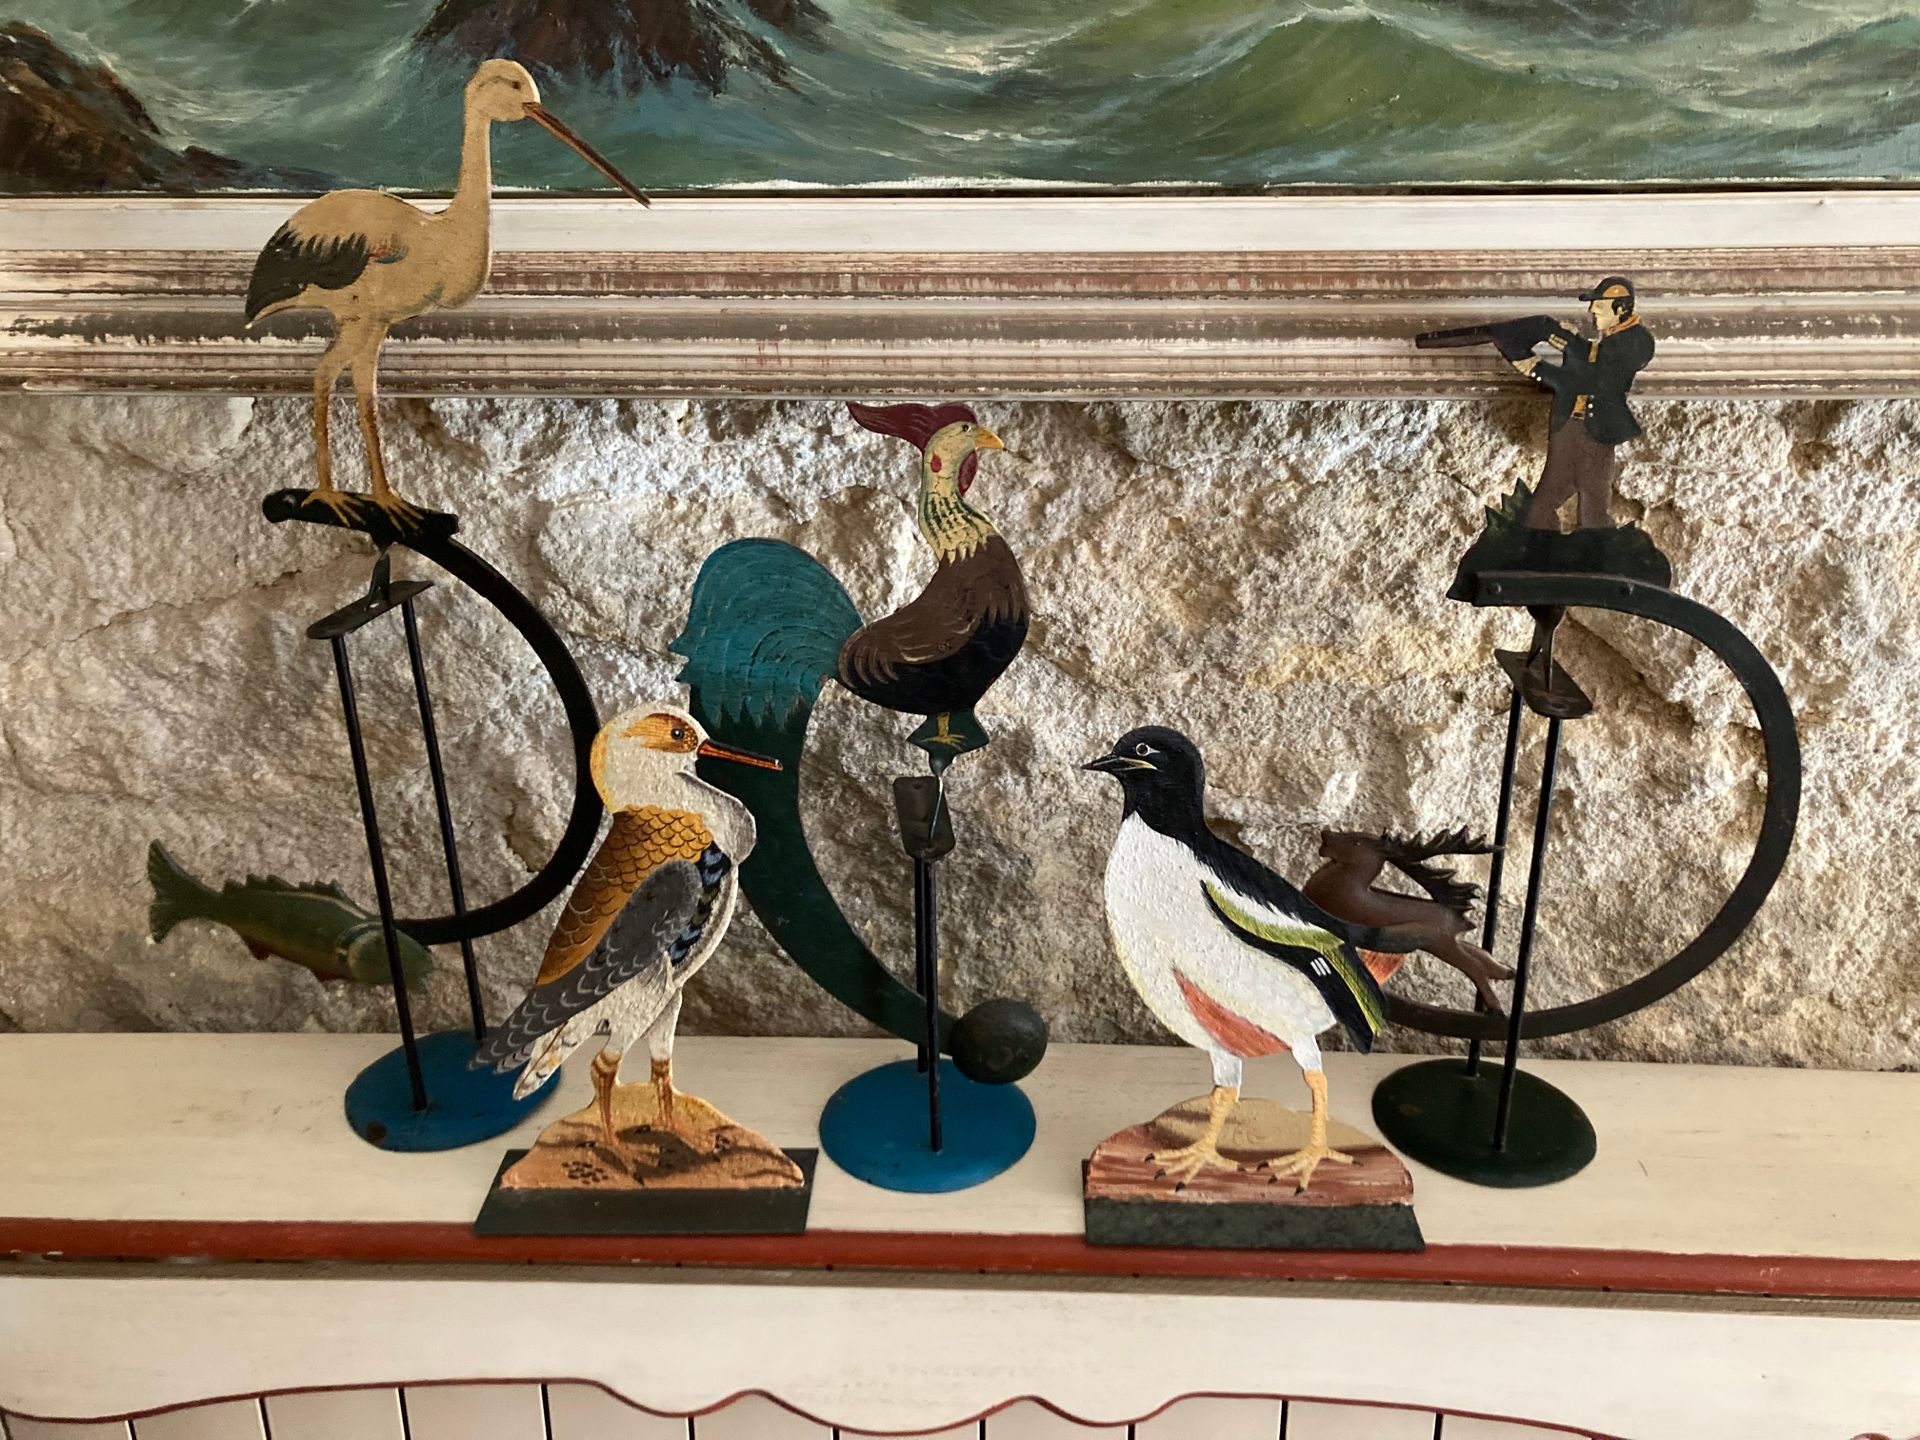 Null 一套三个多色漆的金属摇篮，有一只公鸡，一只鹳和一个猎人。
H.53厘米
包括两只麻雀和一只鸭子的形象。